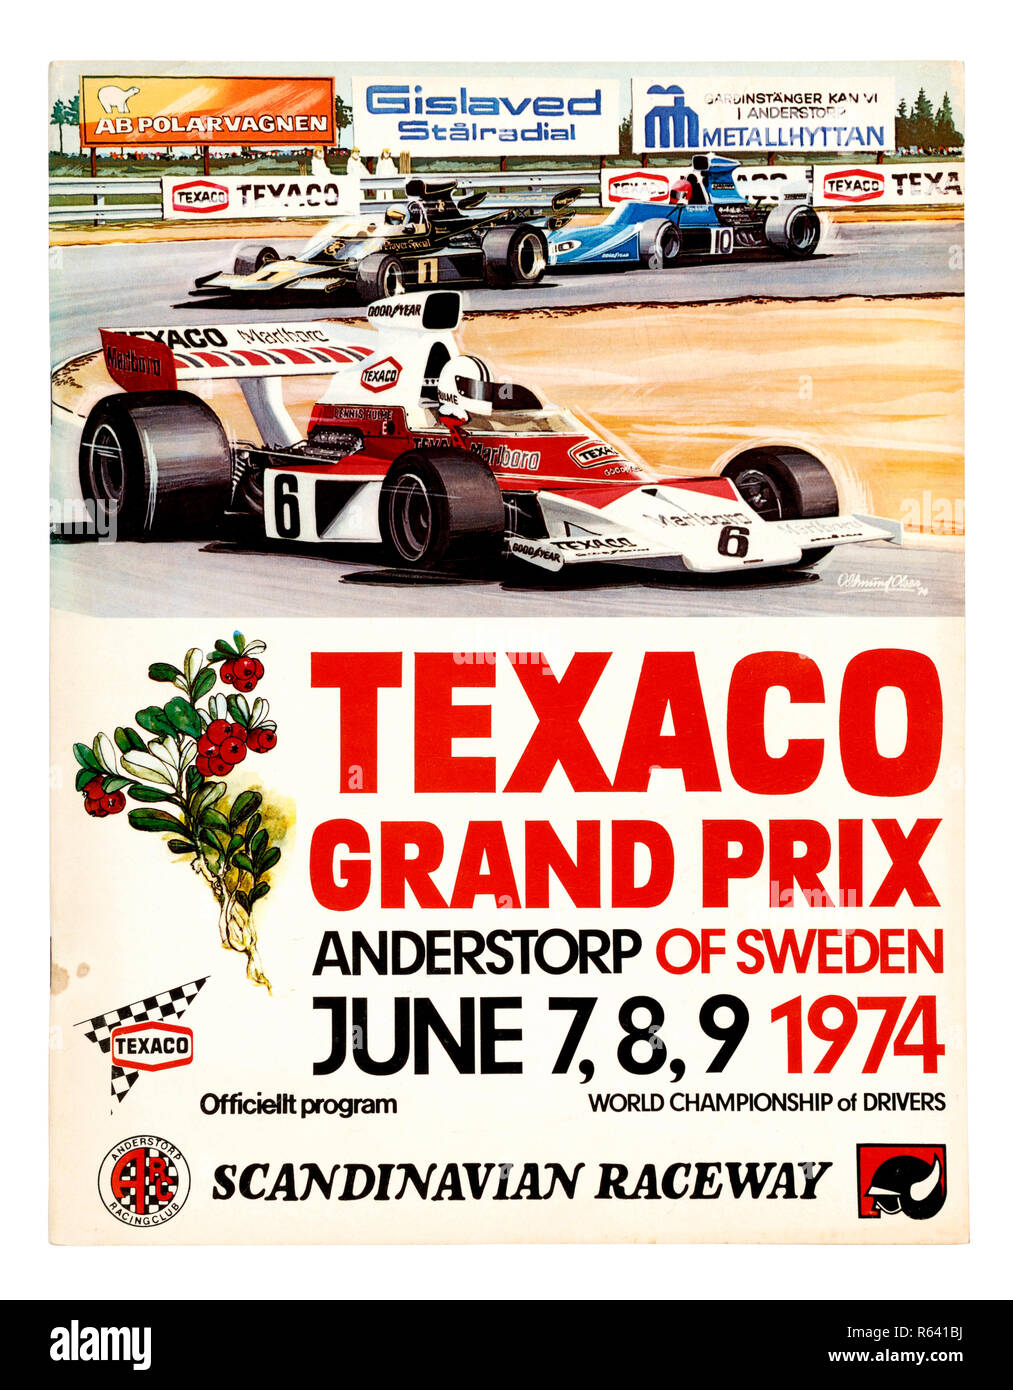 Le capot avant d'un programme officiel de 1974 Grand Prix de formule 1 Course à la Scandinavian Raceway en Suède Anderstorp Banque D'Images